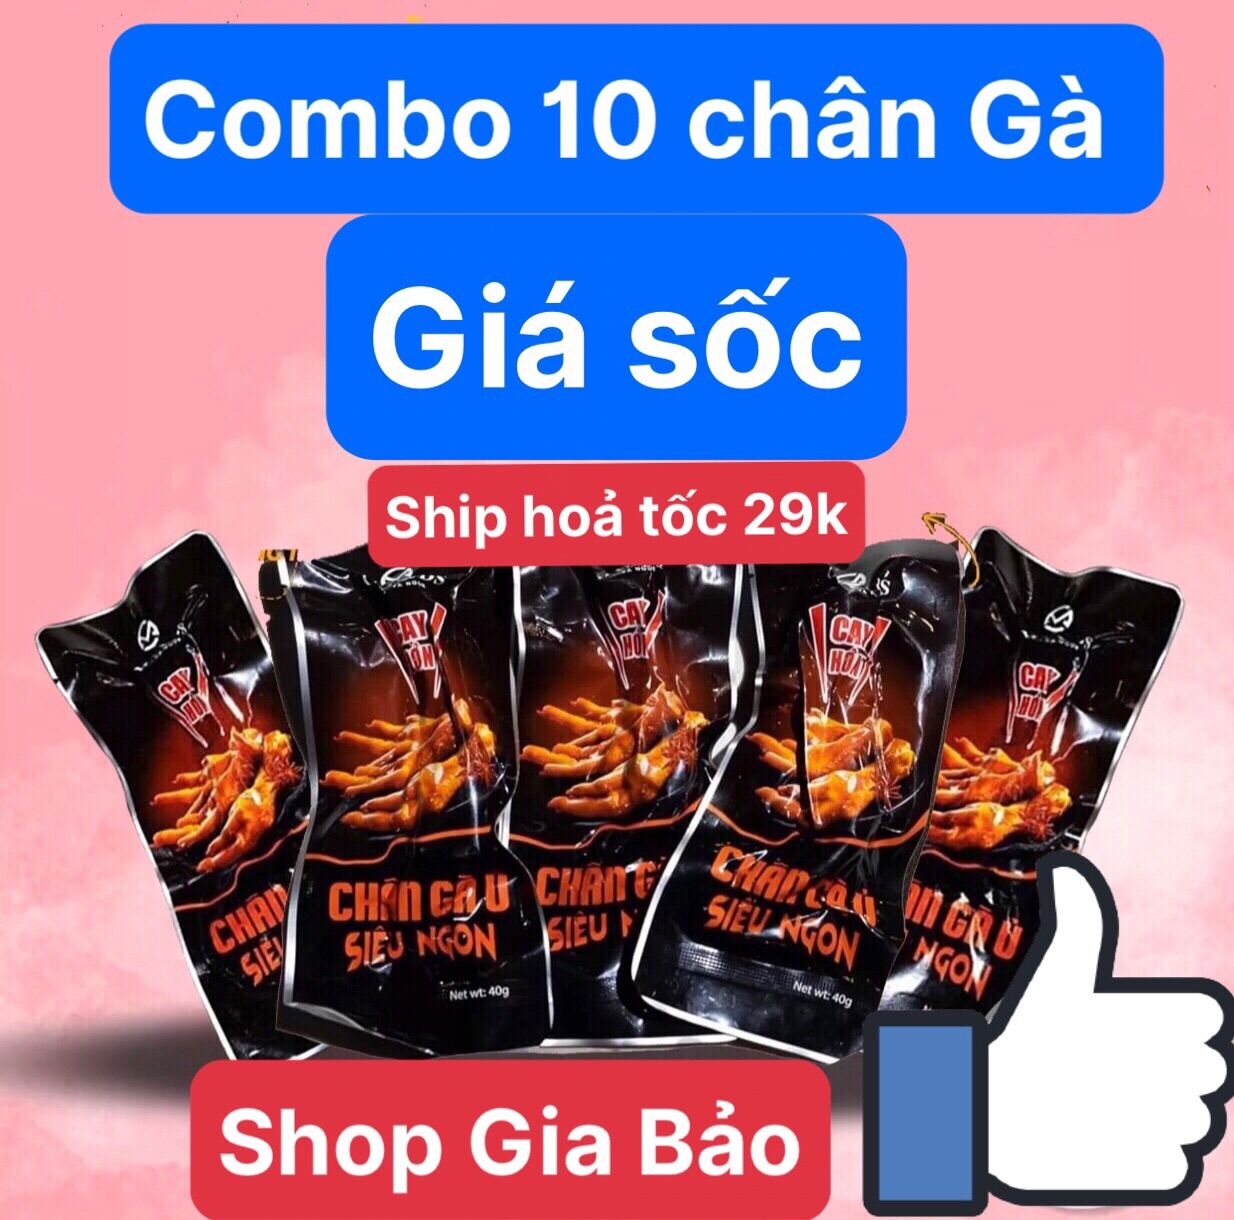 Combo 10 chân gà ủ vị Việt nam siêu ngon siêu to của cmfoods